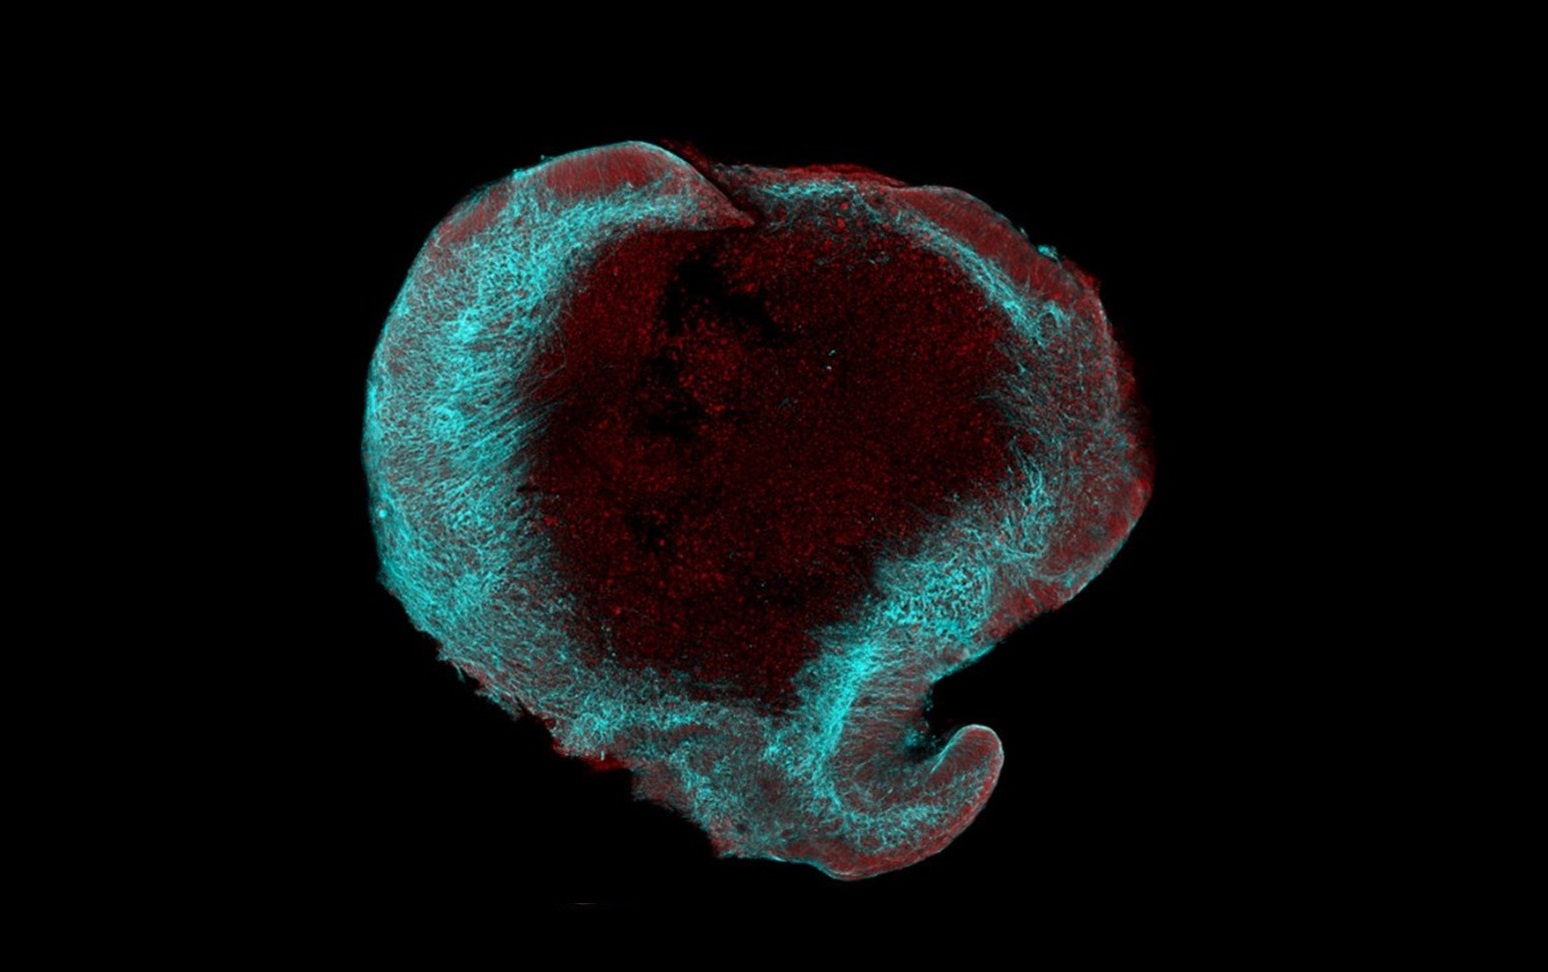 20230626mikroskopicky snimek mozkoveho organoidu